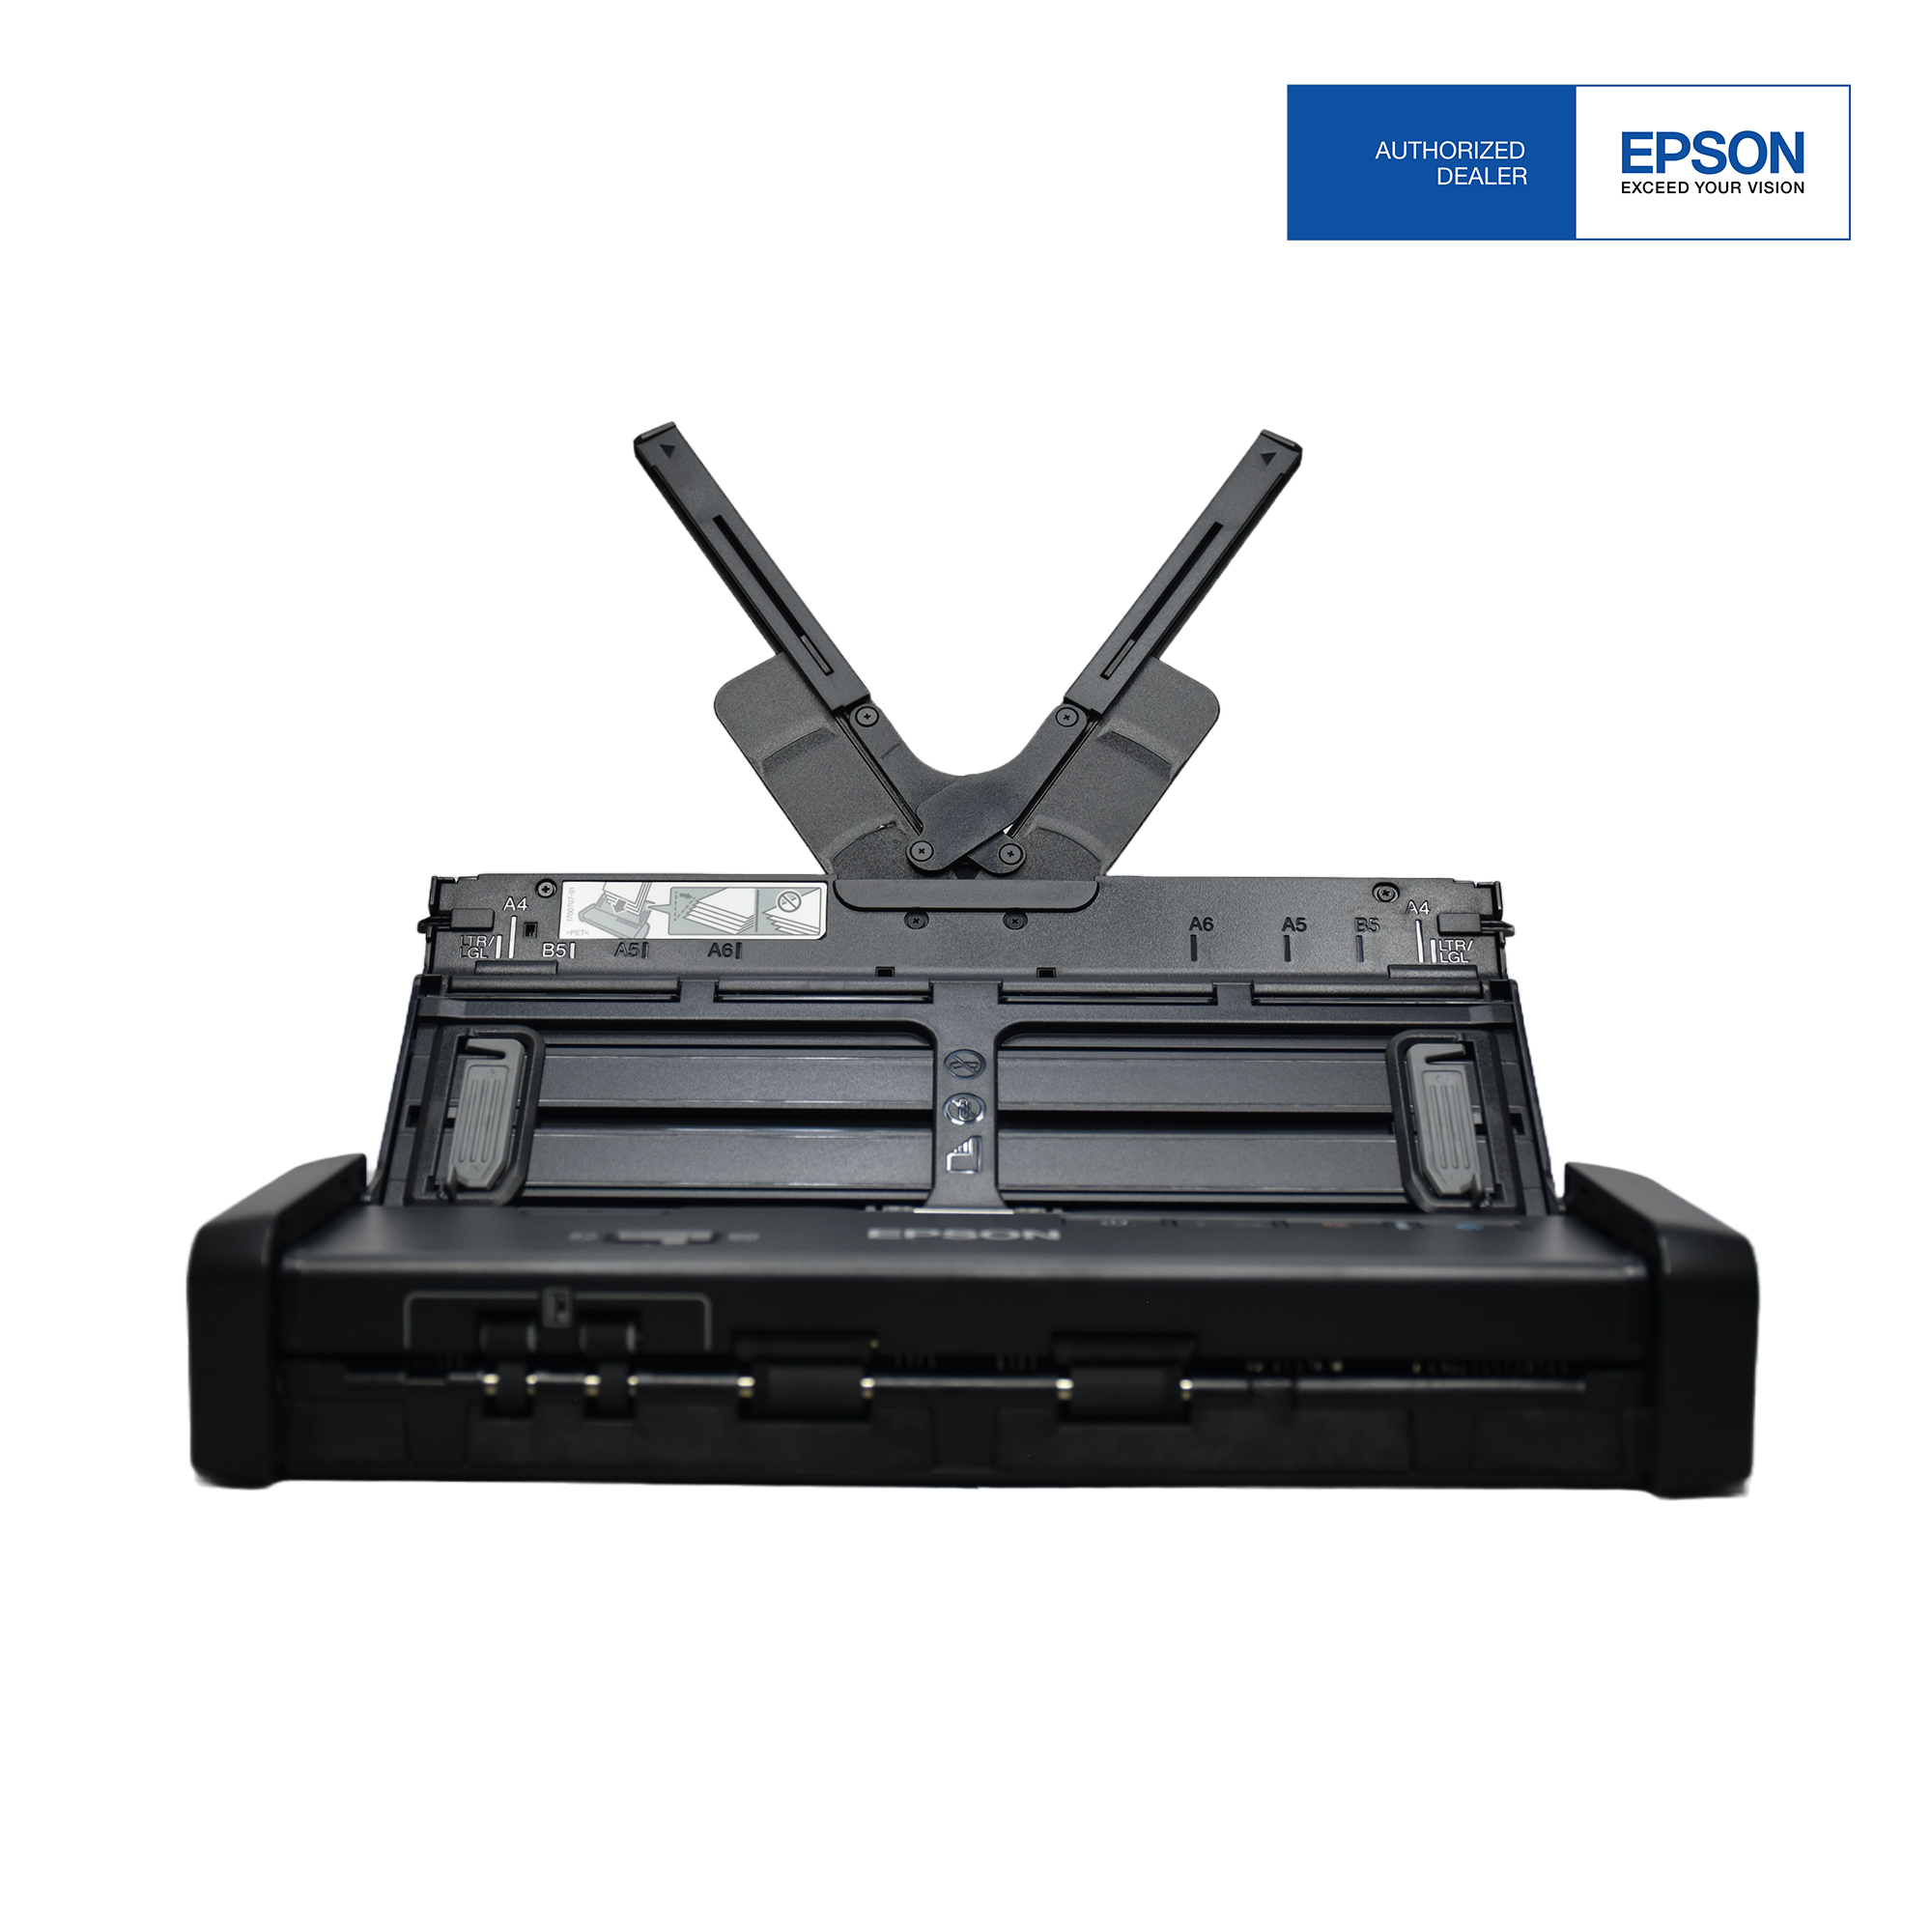 Epson DS310 Scanner